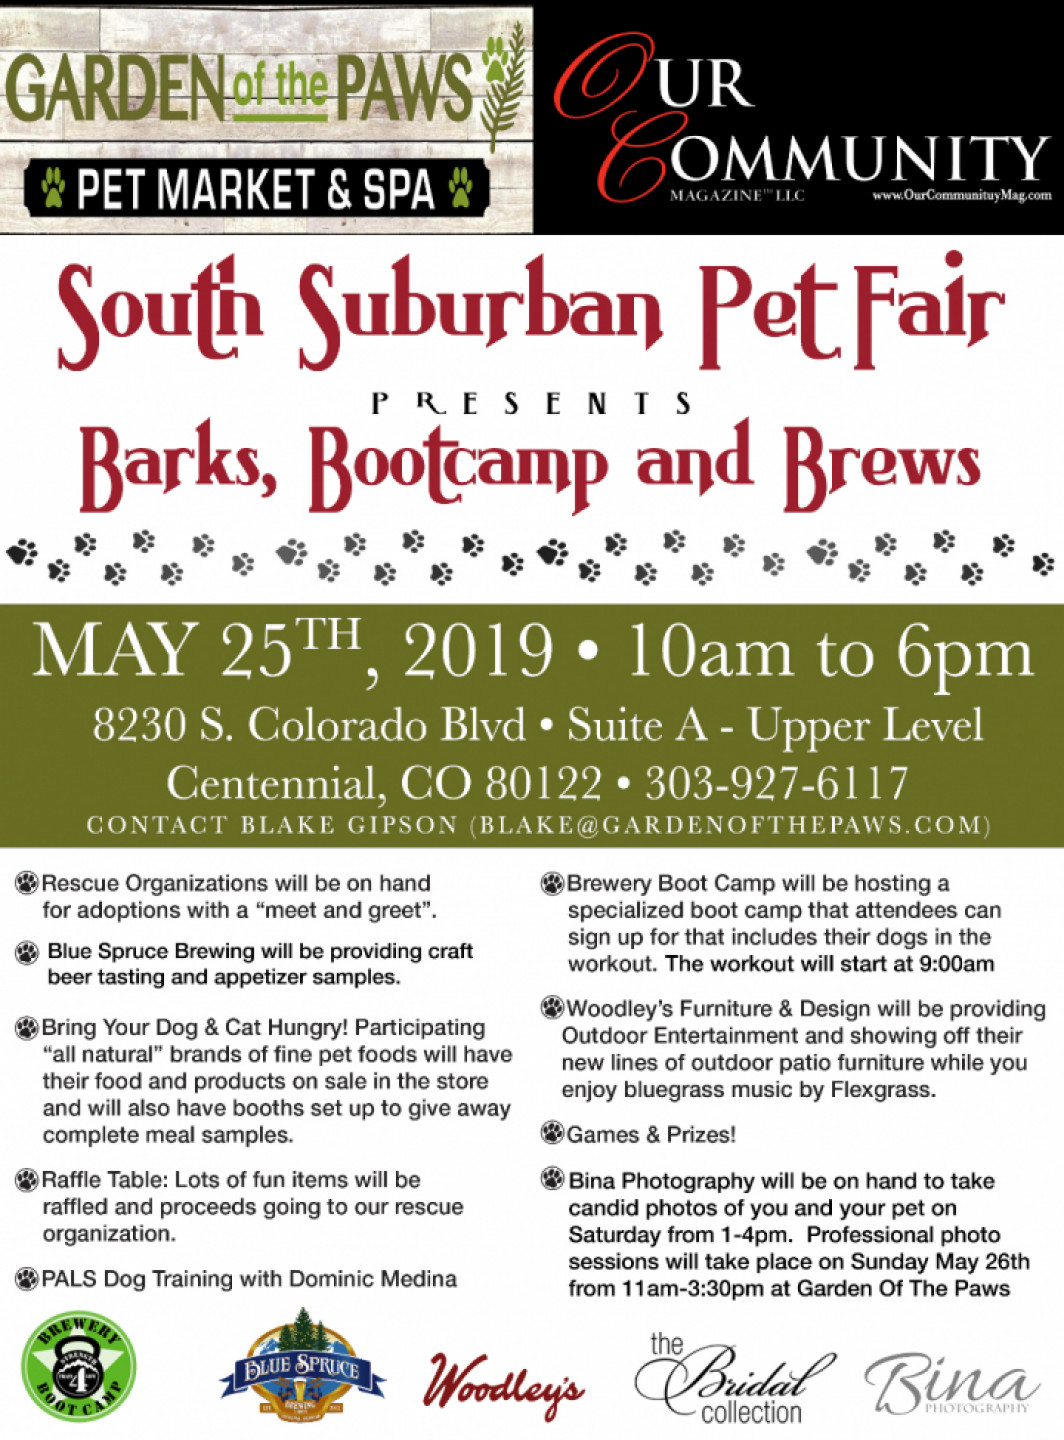 South Suburban Pet Fair Saturday May 25